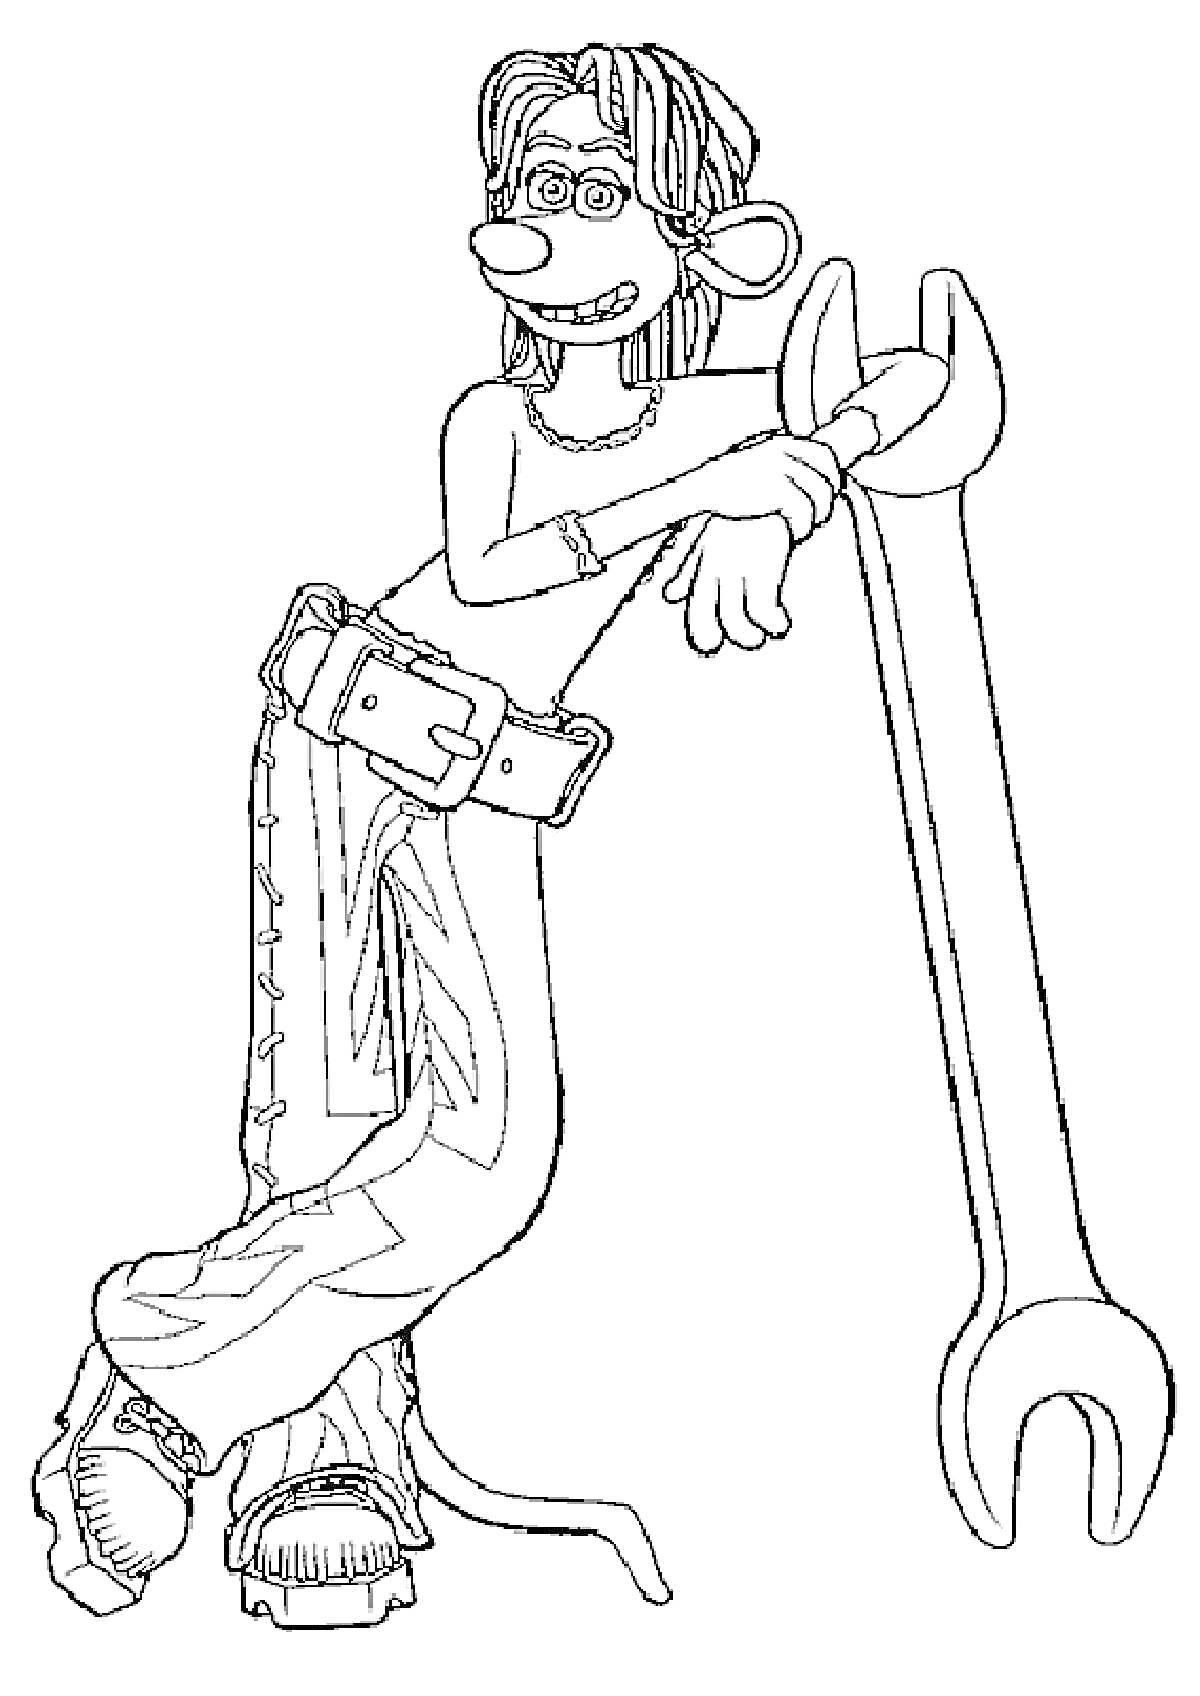 Раскраска Персонаж в очках, с хвостом и большими зубами, опирающийся на большой разводной ключ